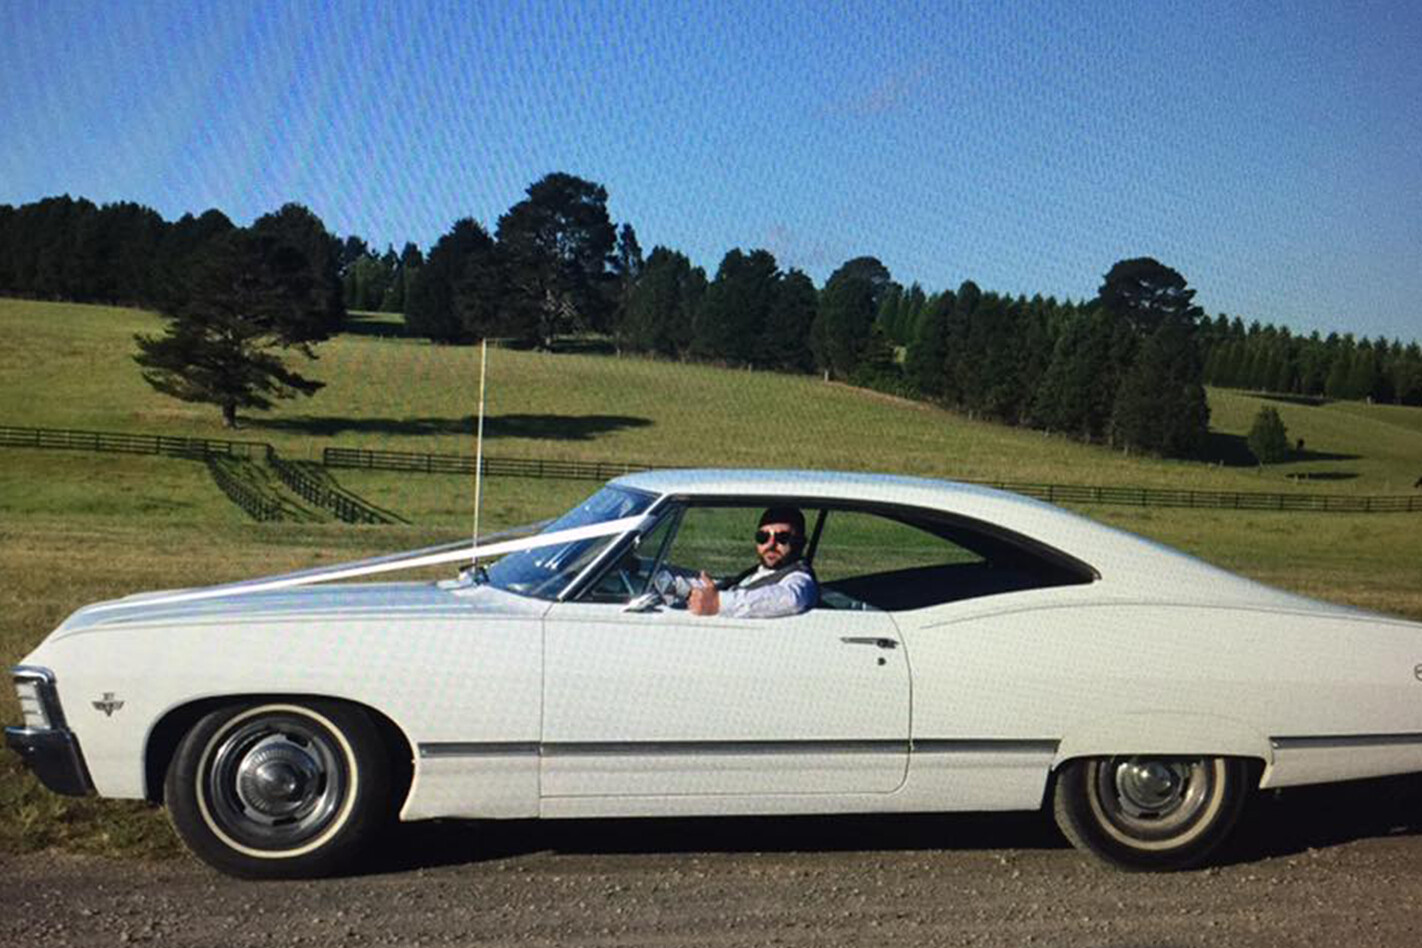 Daniel Wonson's '67 Impala